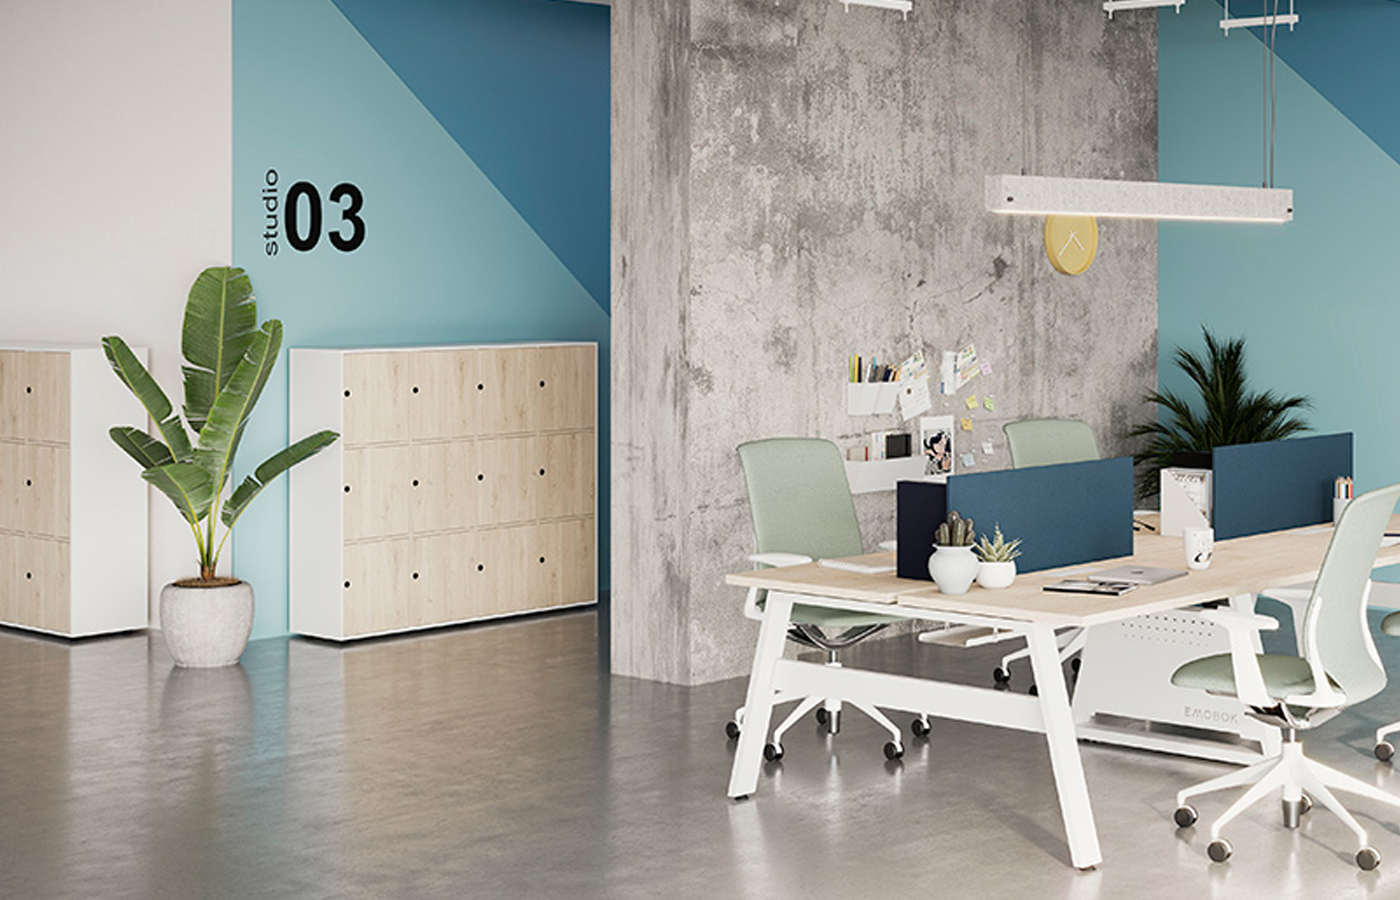 Muebles indispensables en una oficina moderna y funcional